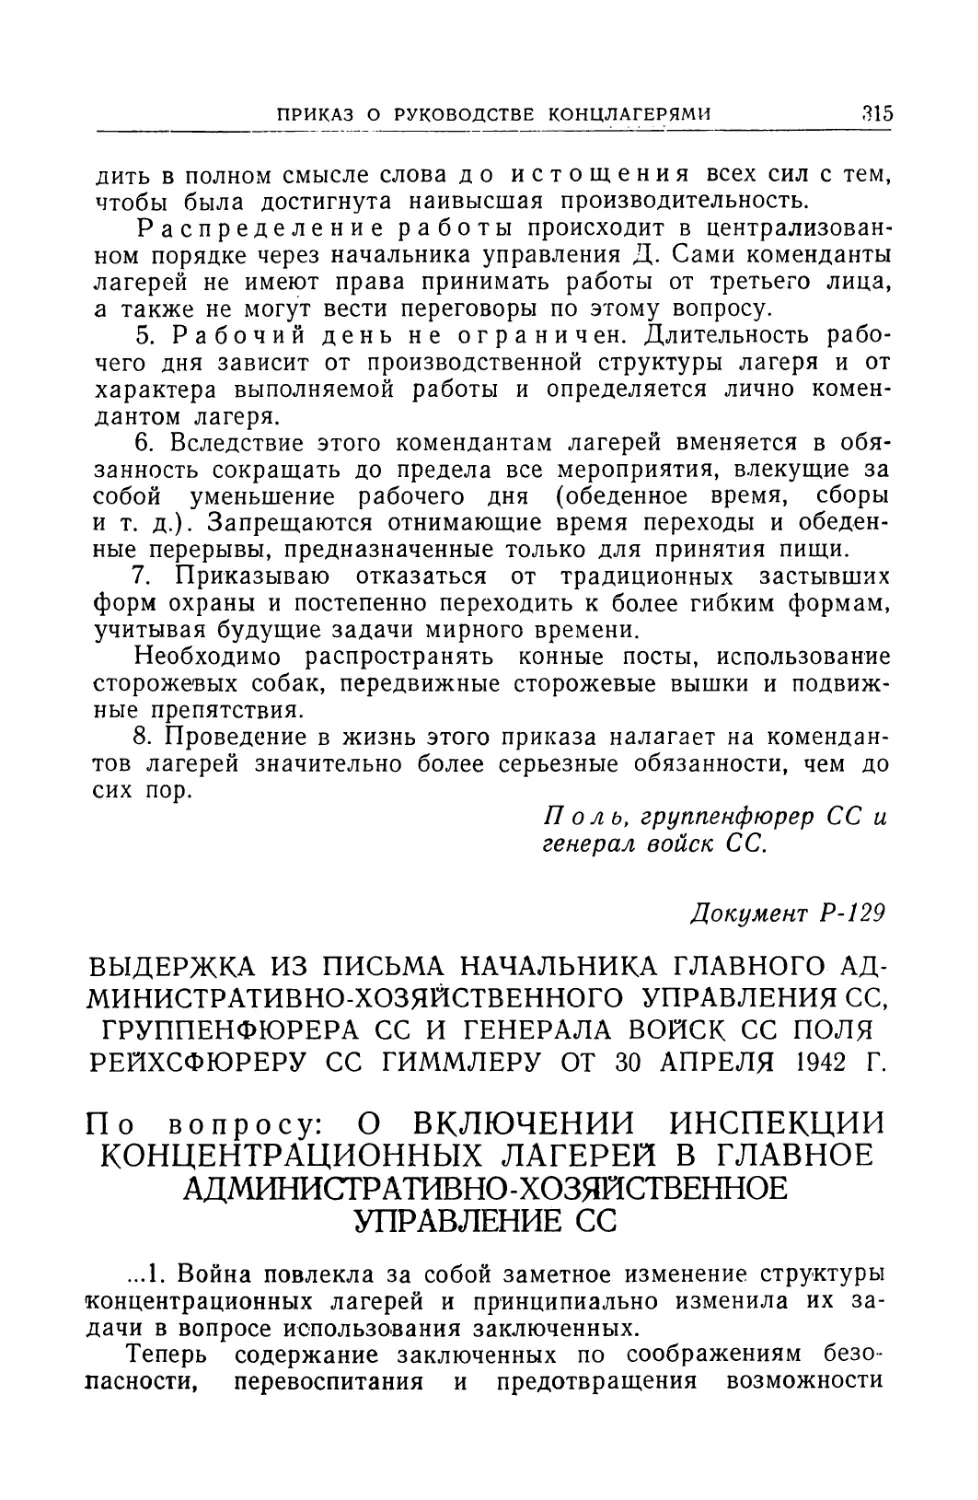 Выдержка из письма начальника главного административно-хозяйственного управления СС Поля от 30 апреля 1942 г.